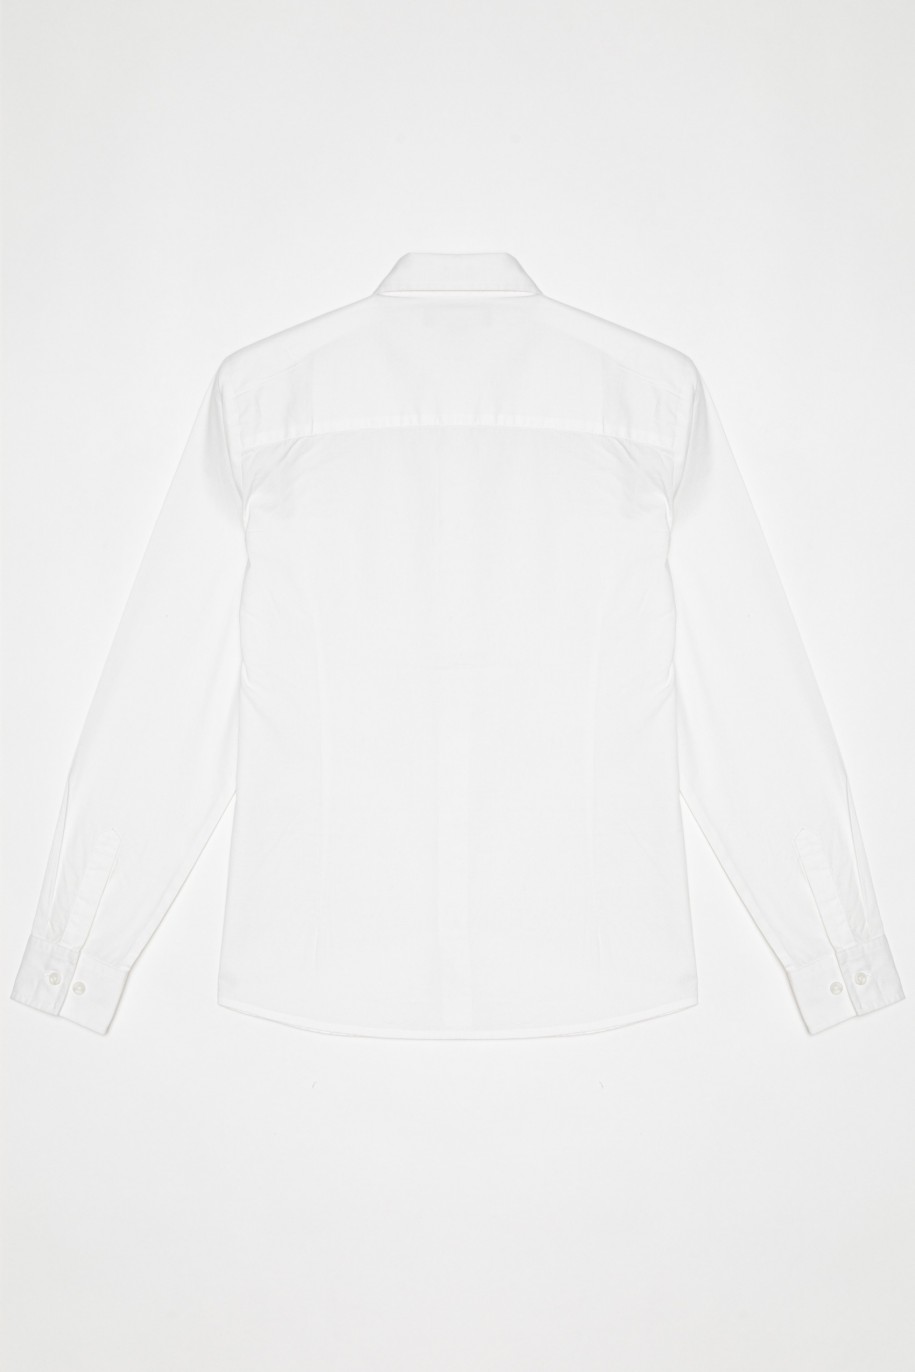 Elegancka biała koszula dla chłopaka - 22237